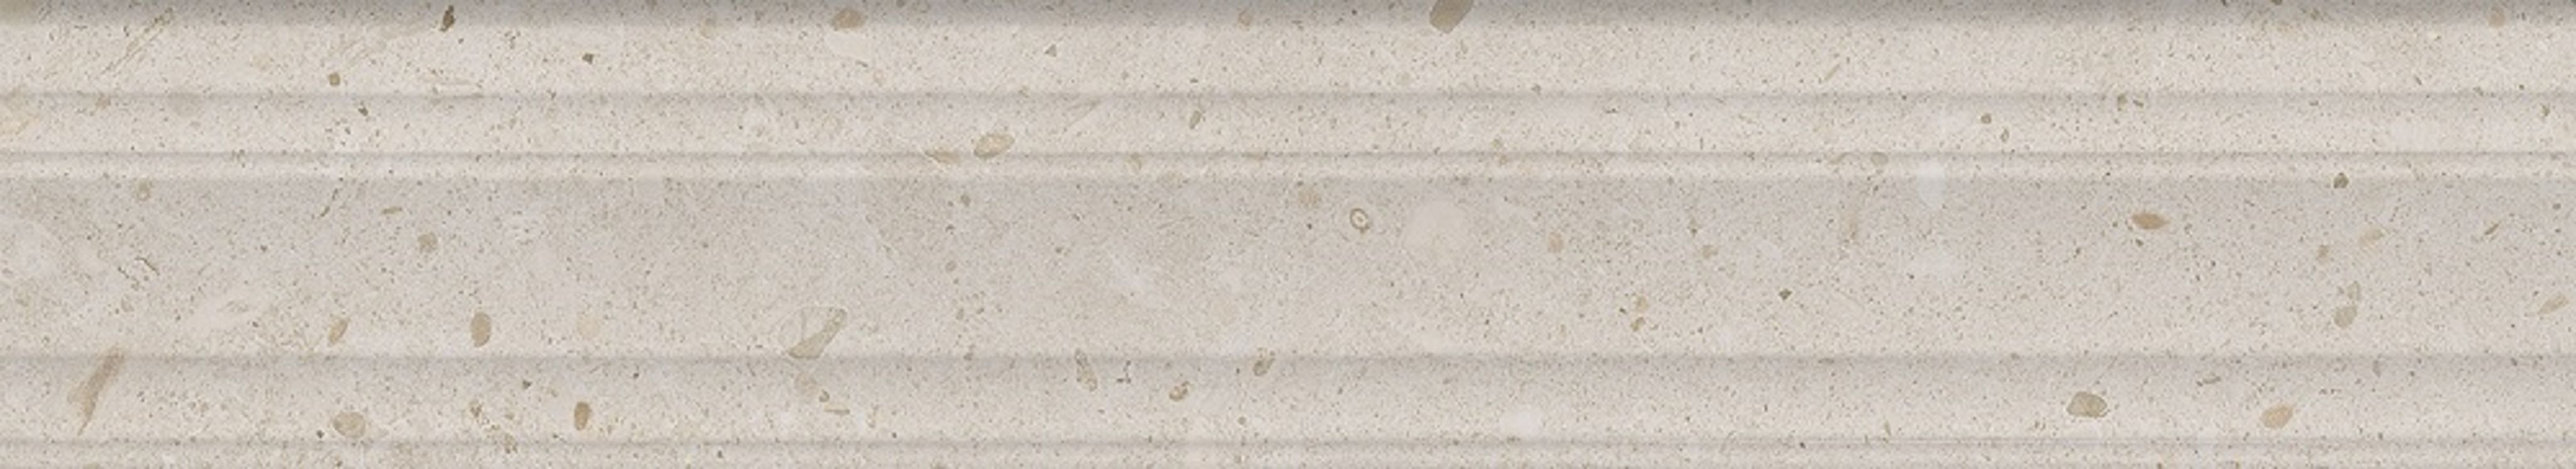 Бордюр KERAMA MARAZZI Риккарди бежевый матовый структура обрезной 40x7,3 см. 12 штук в упаковке